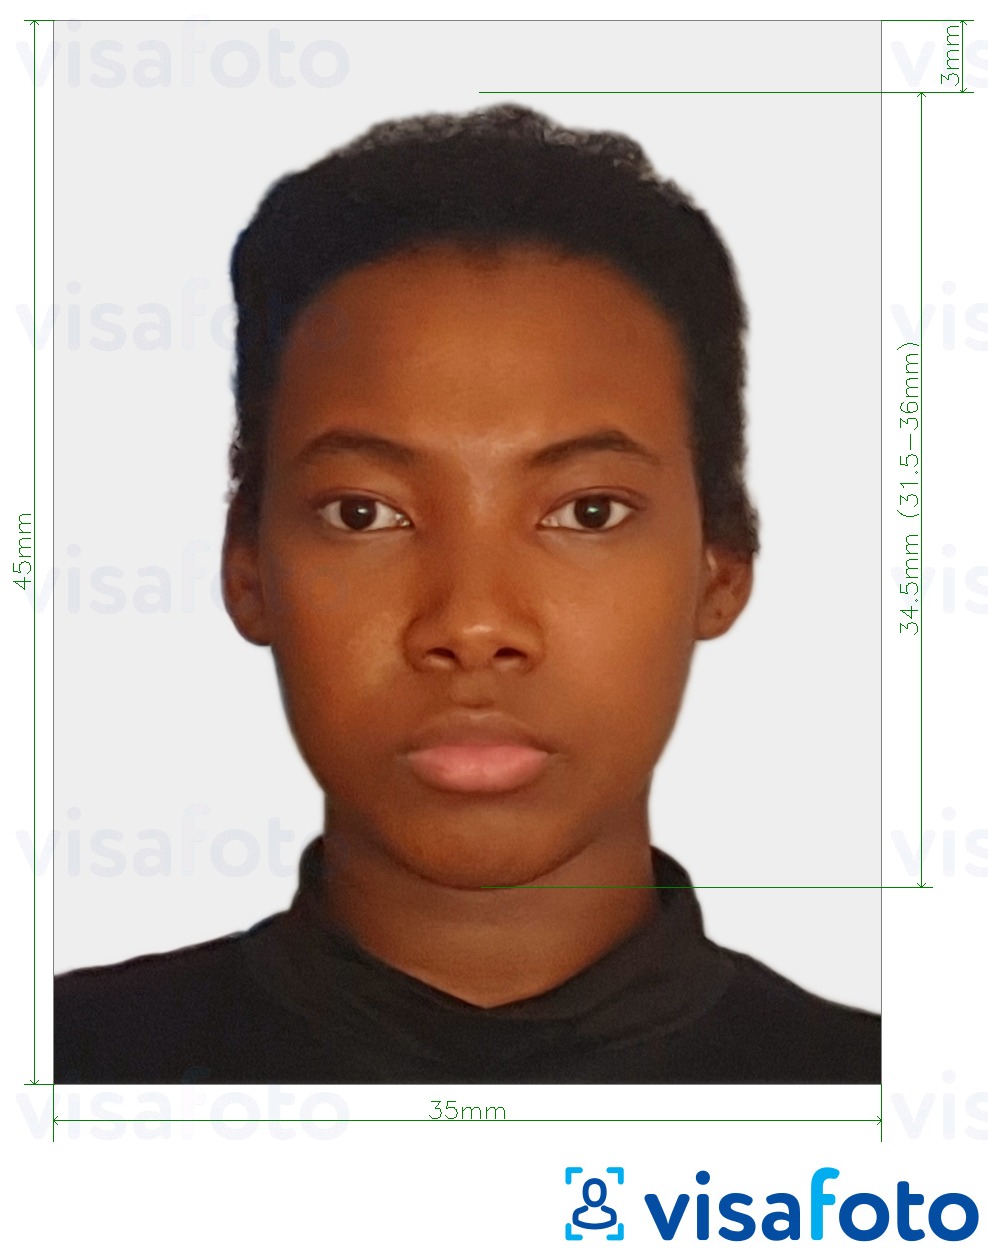 Exemple de foto per a El passaport del Congo (Brazzaville) 35x45 mm (3,5x4,5 cm) amb la mida exacta especificada